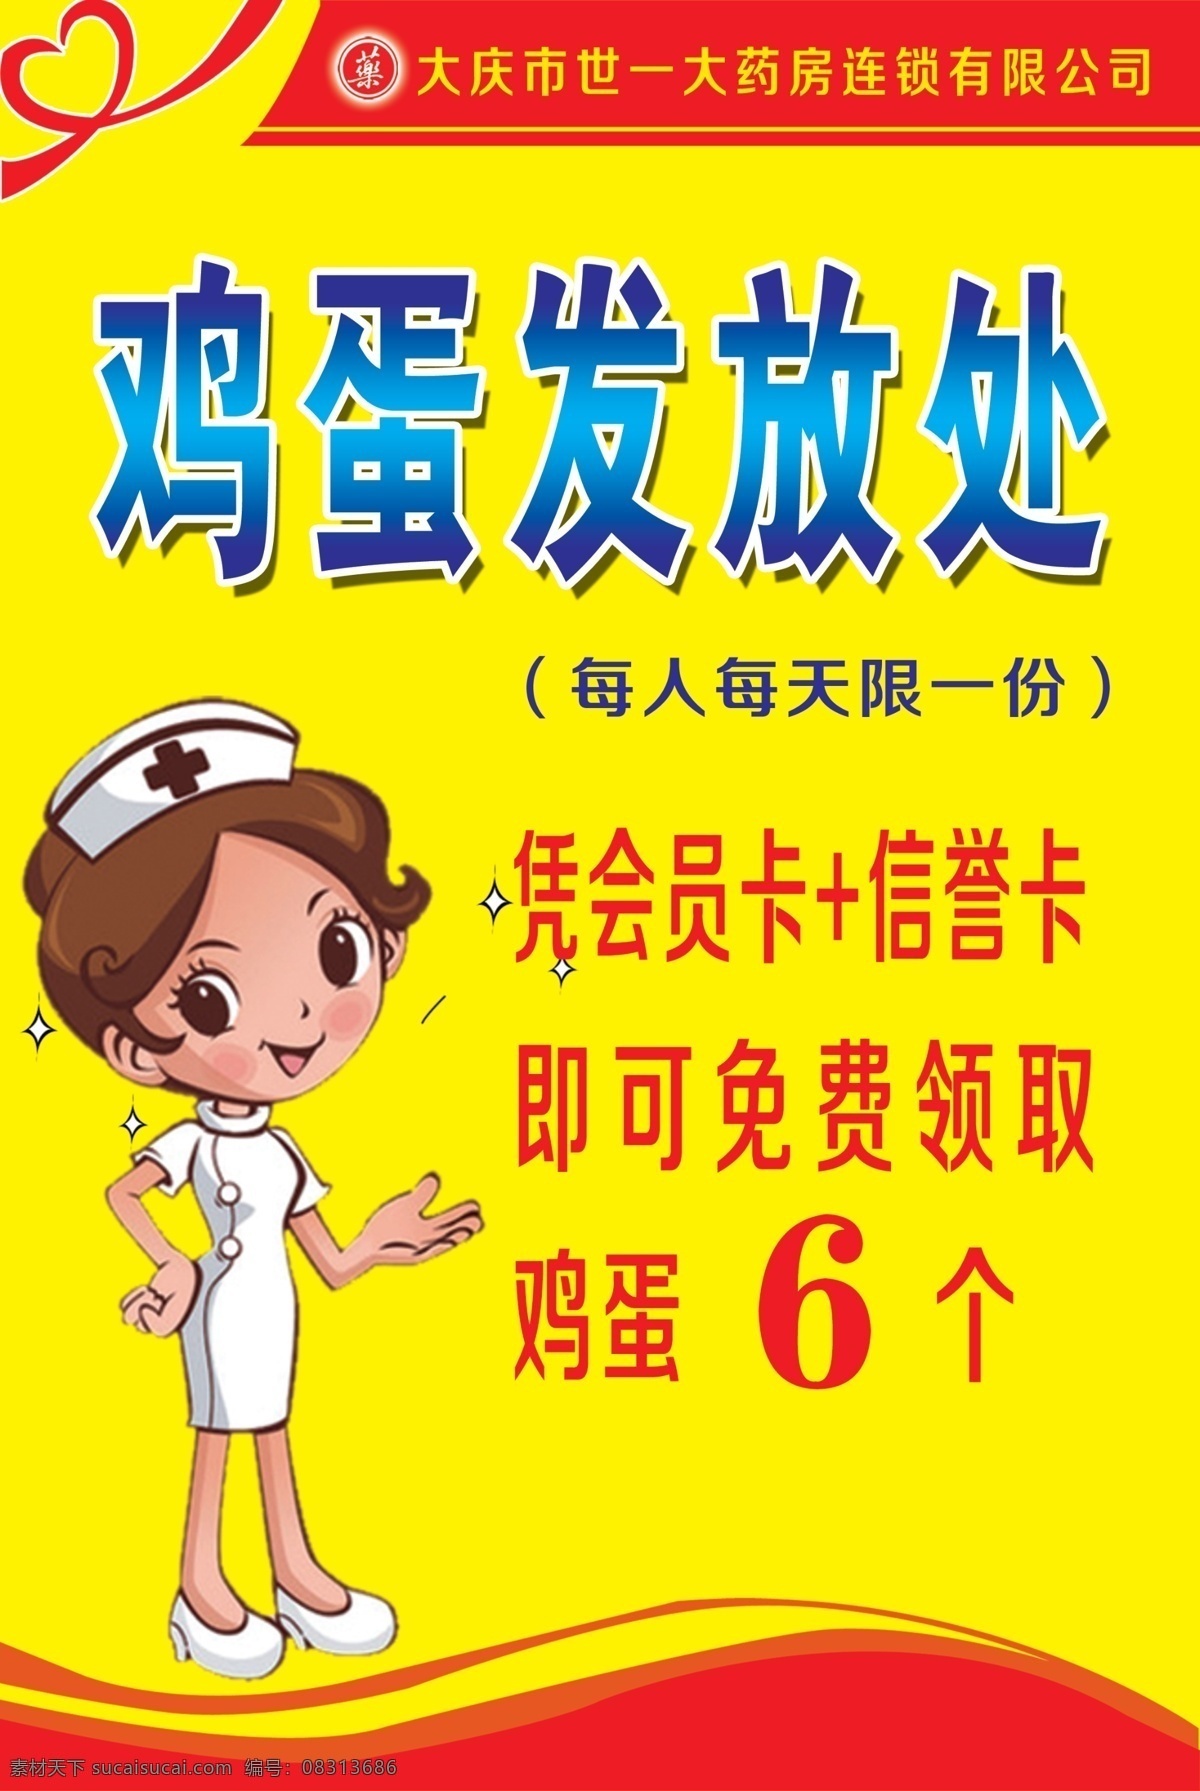 药店海报 海报 鸡蛋发放处 宣传 护士 卡通 其他模版 广告设计模板 源文件